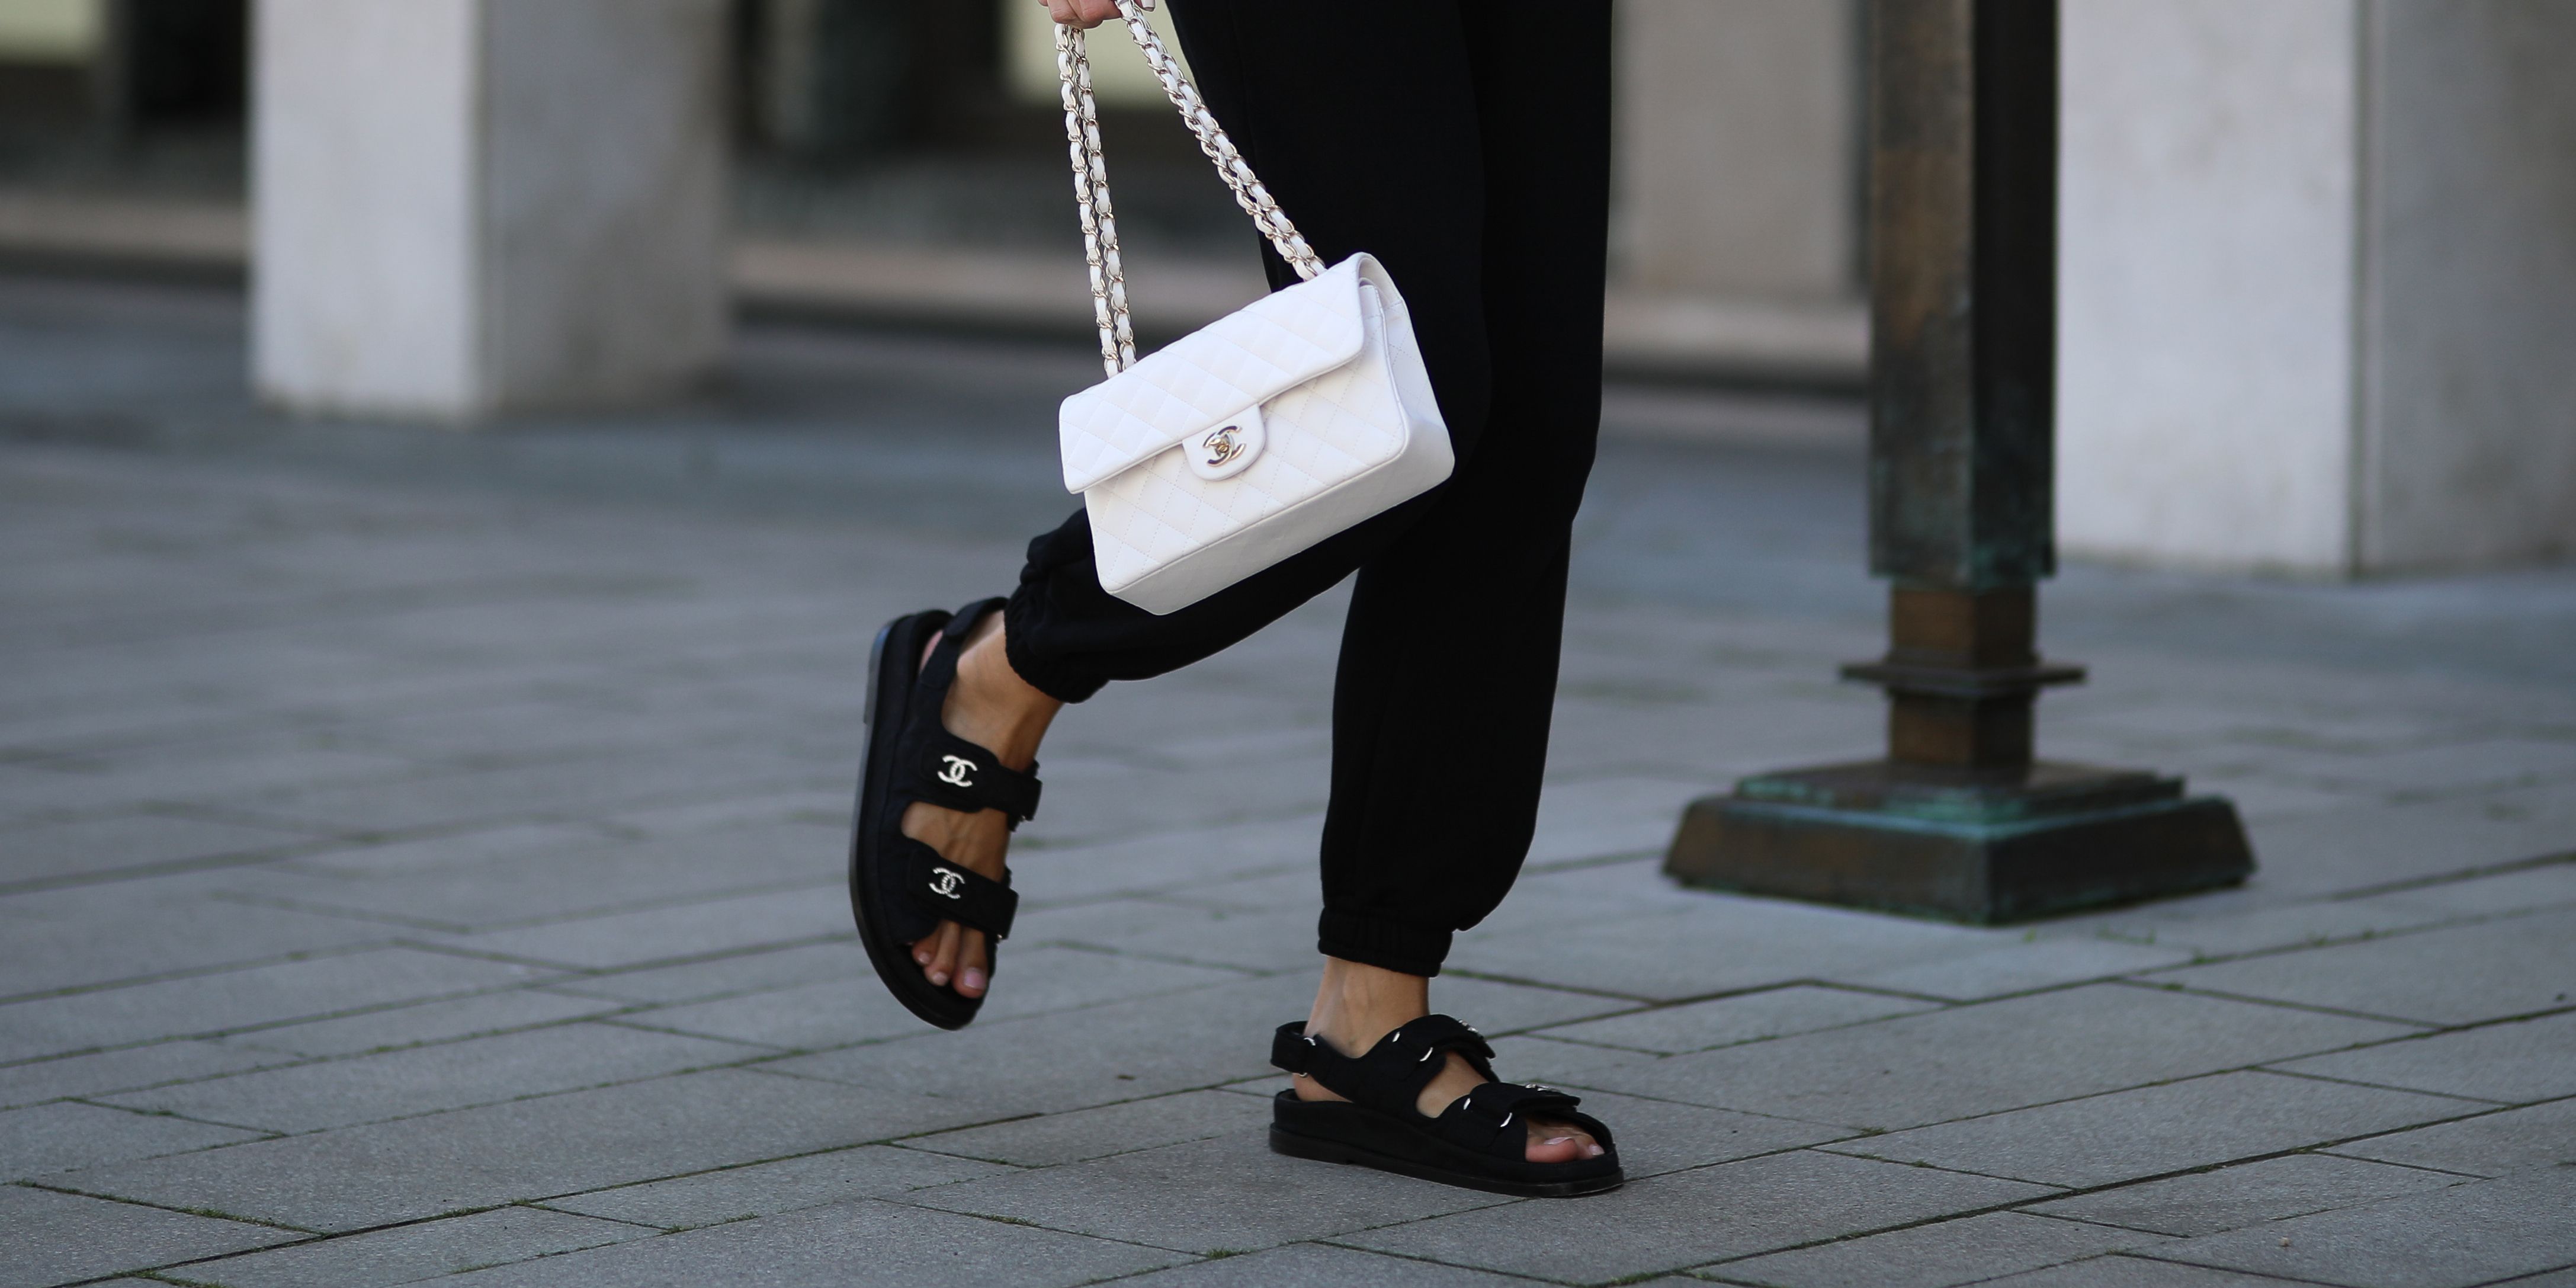 Edele agitatie Port Déze comfortabele sandalen van Chanel zie je deze zomer overal